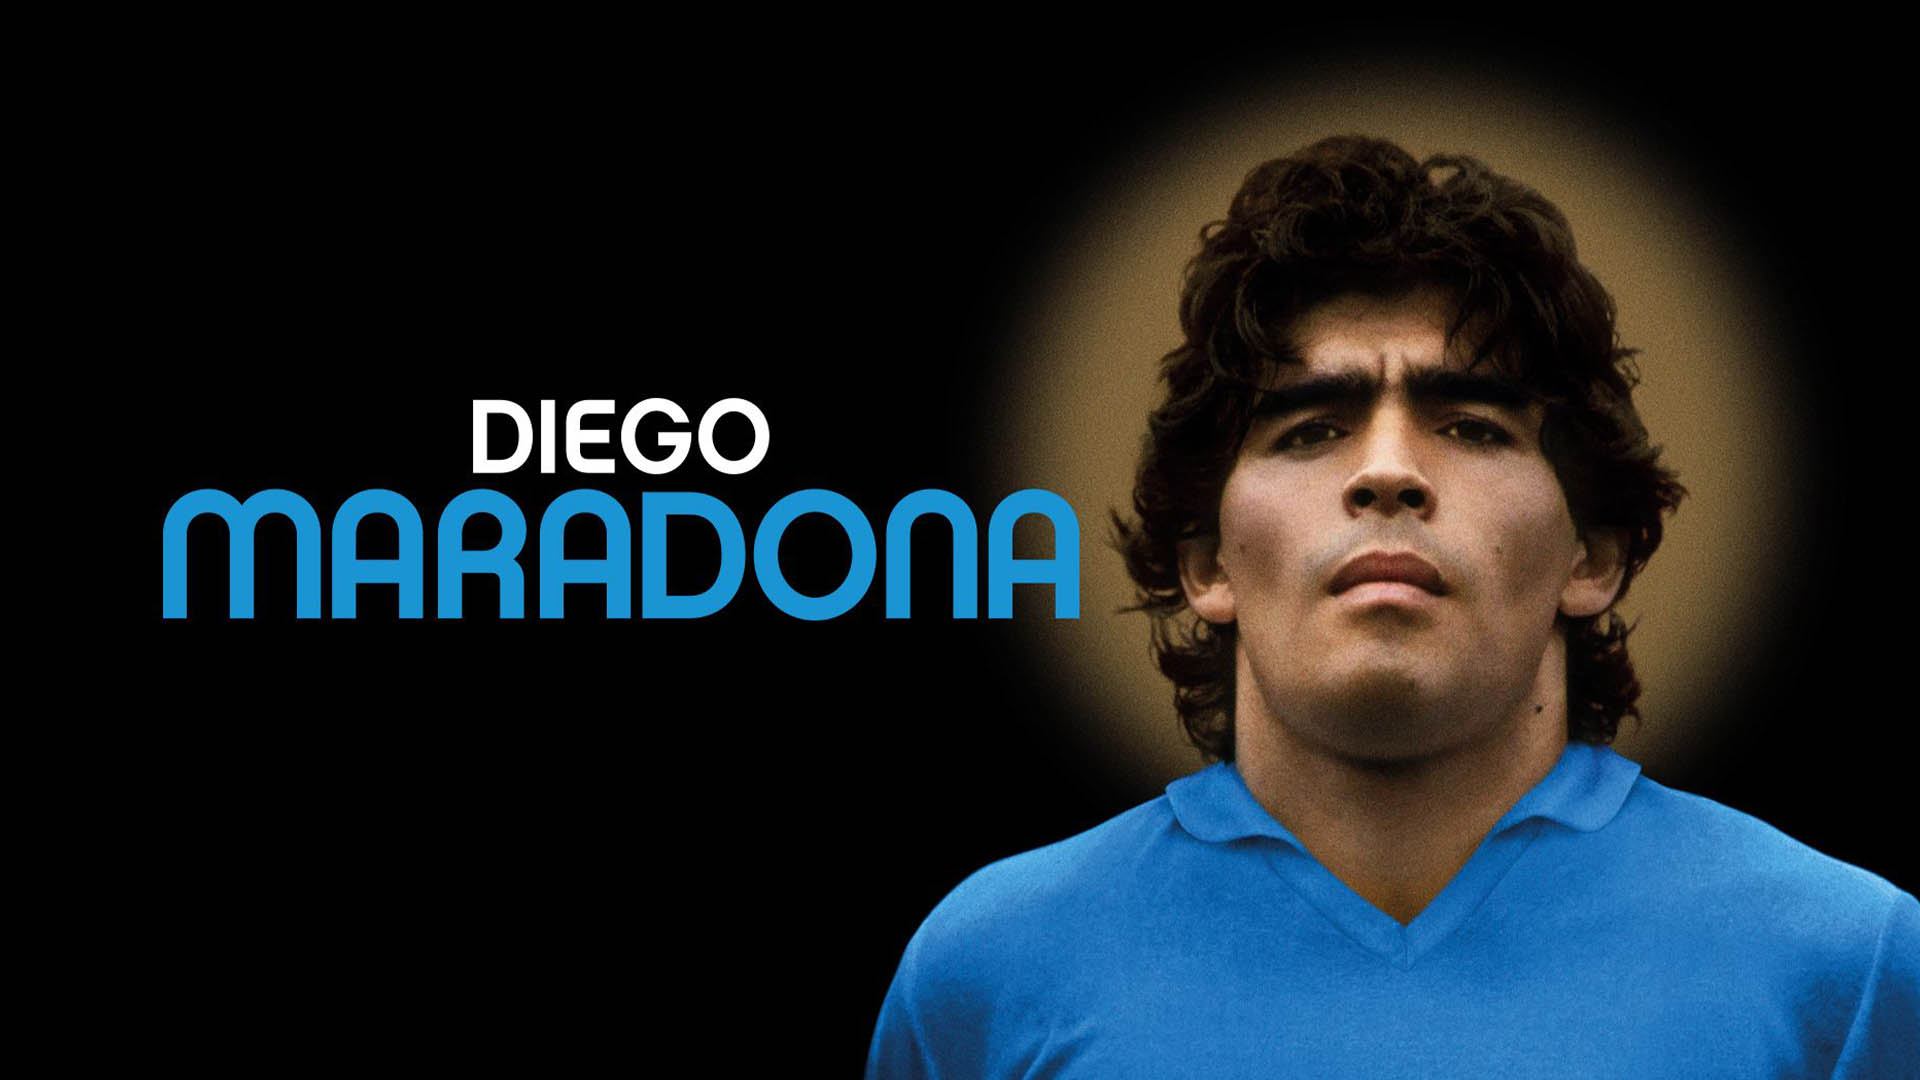 An image of Diego Maradona in the movie Diego Maradona